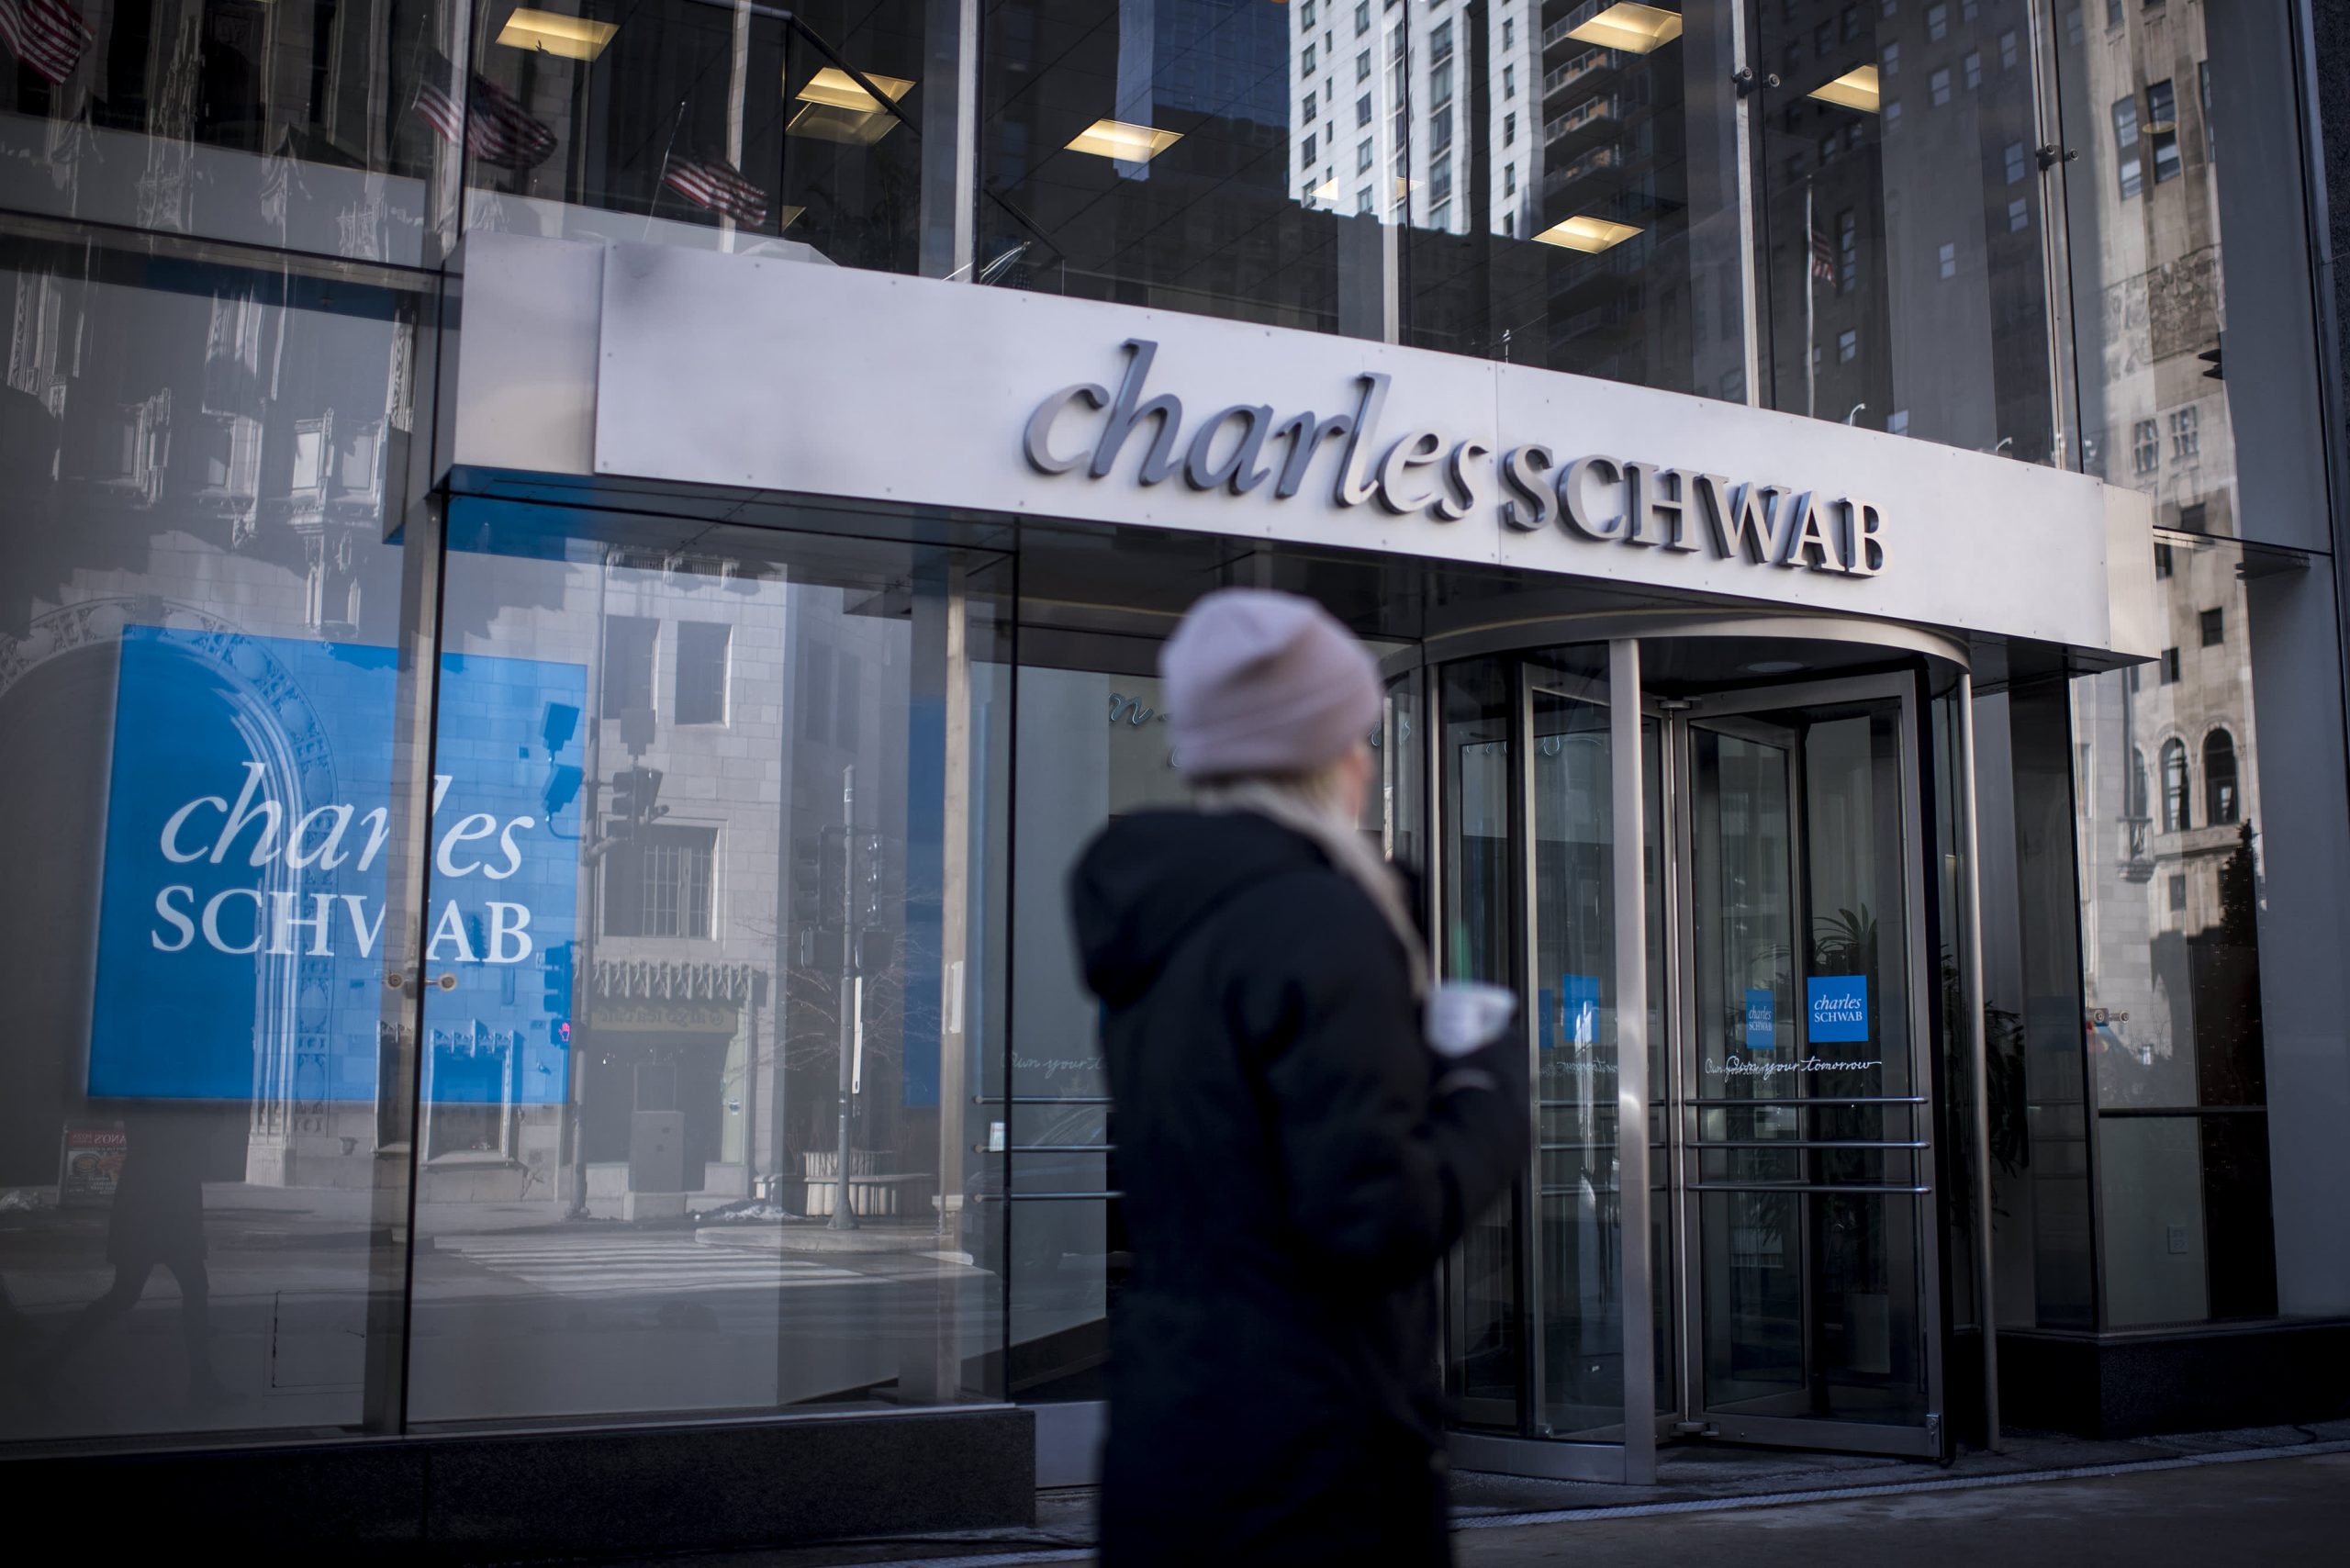 Charles Schwab This autumn 2020 earnings